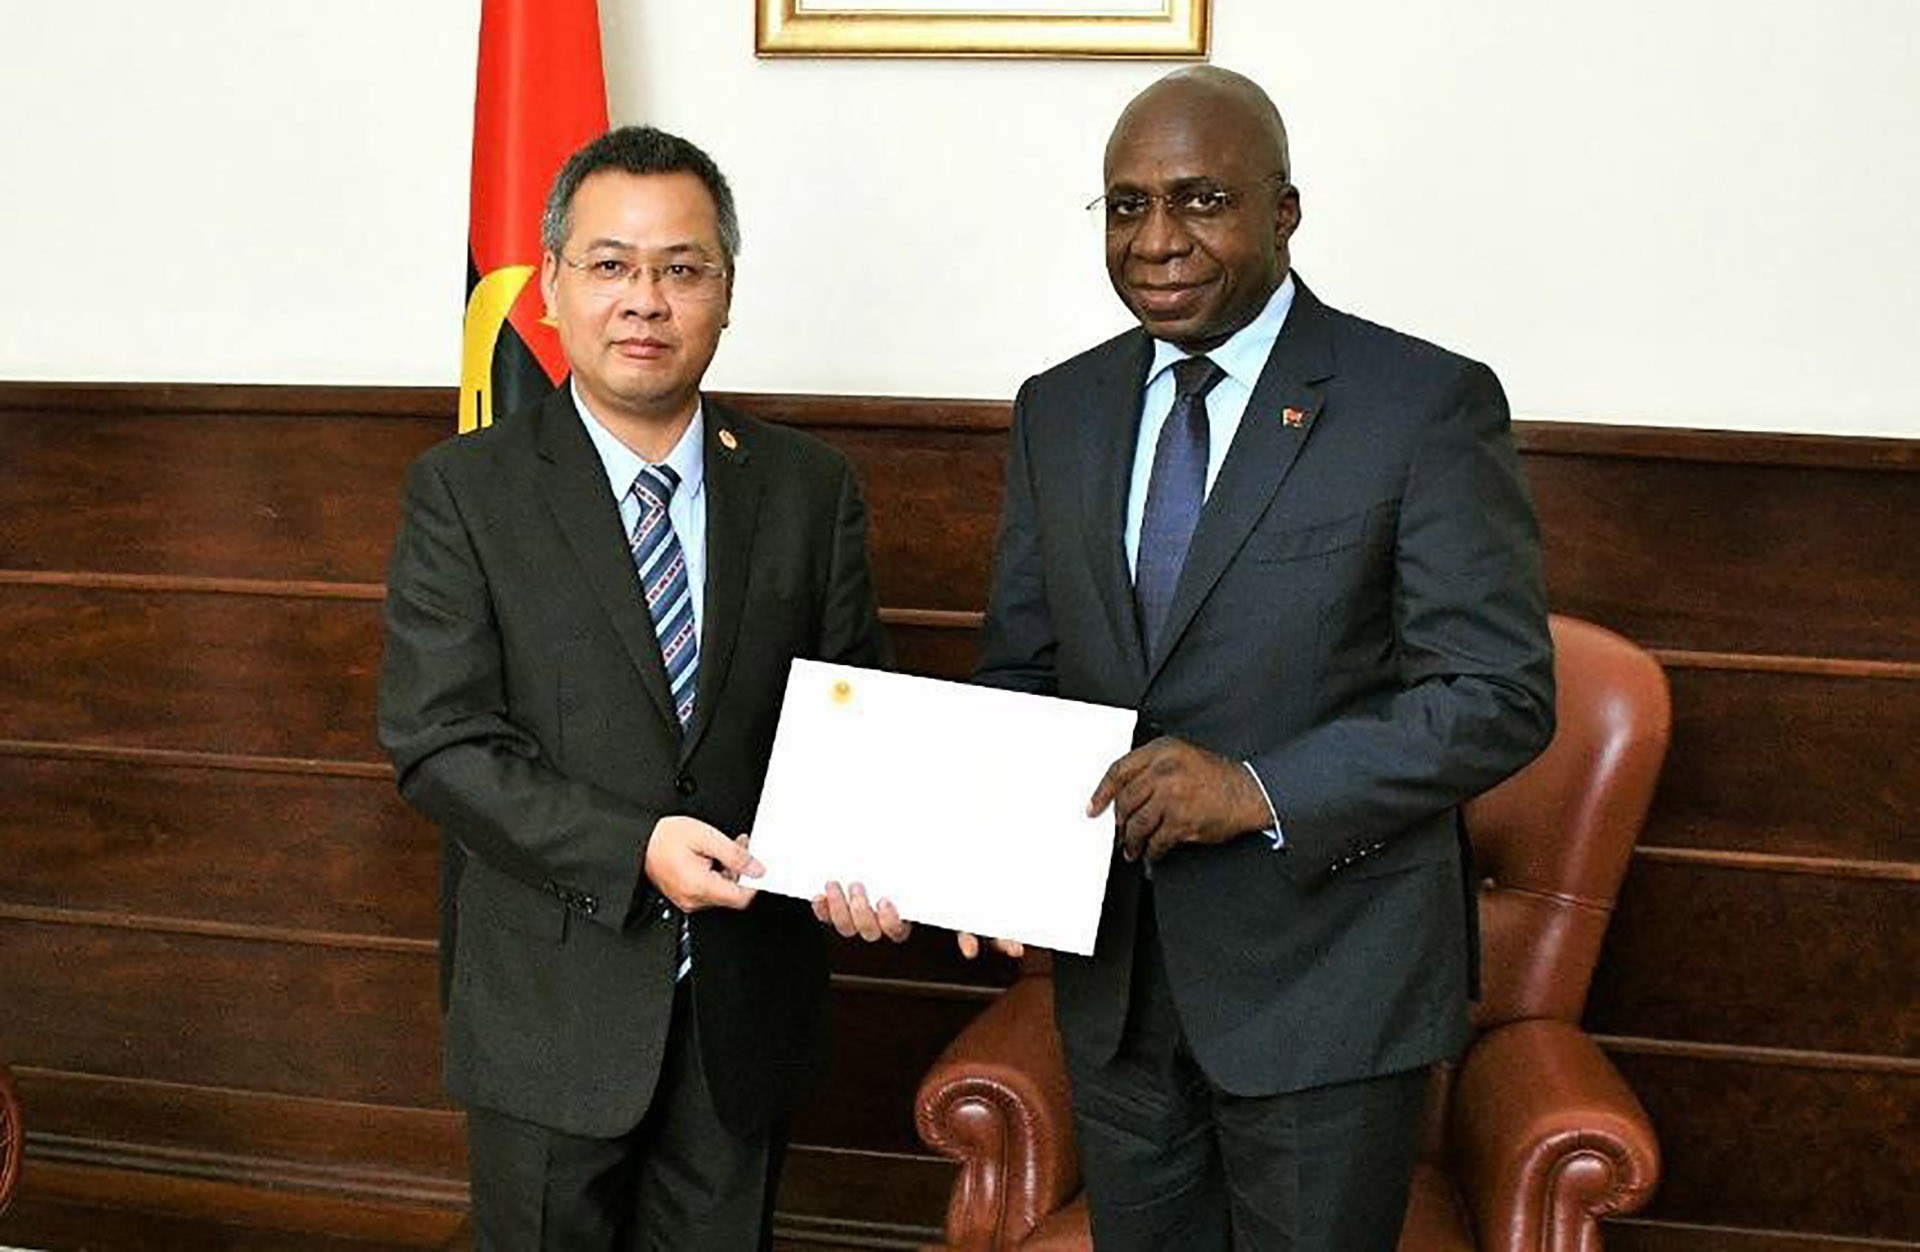 Đại sứ Dương Chính Chức và Bộ trưởng Ngoại giao Angola Angola Téte António trong buổi chào xã giao và trình bản sao Thư ủy nhiệm.